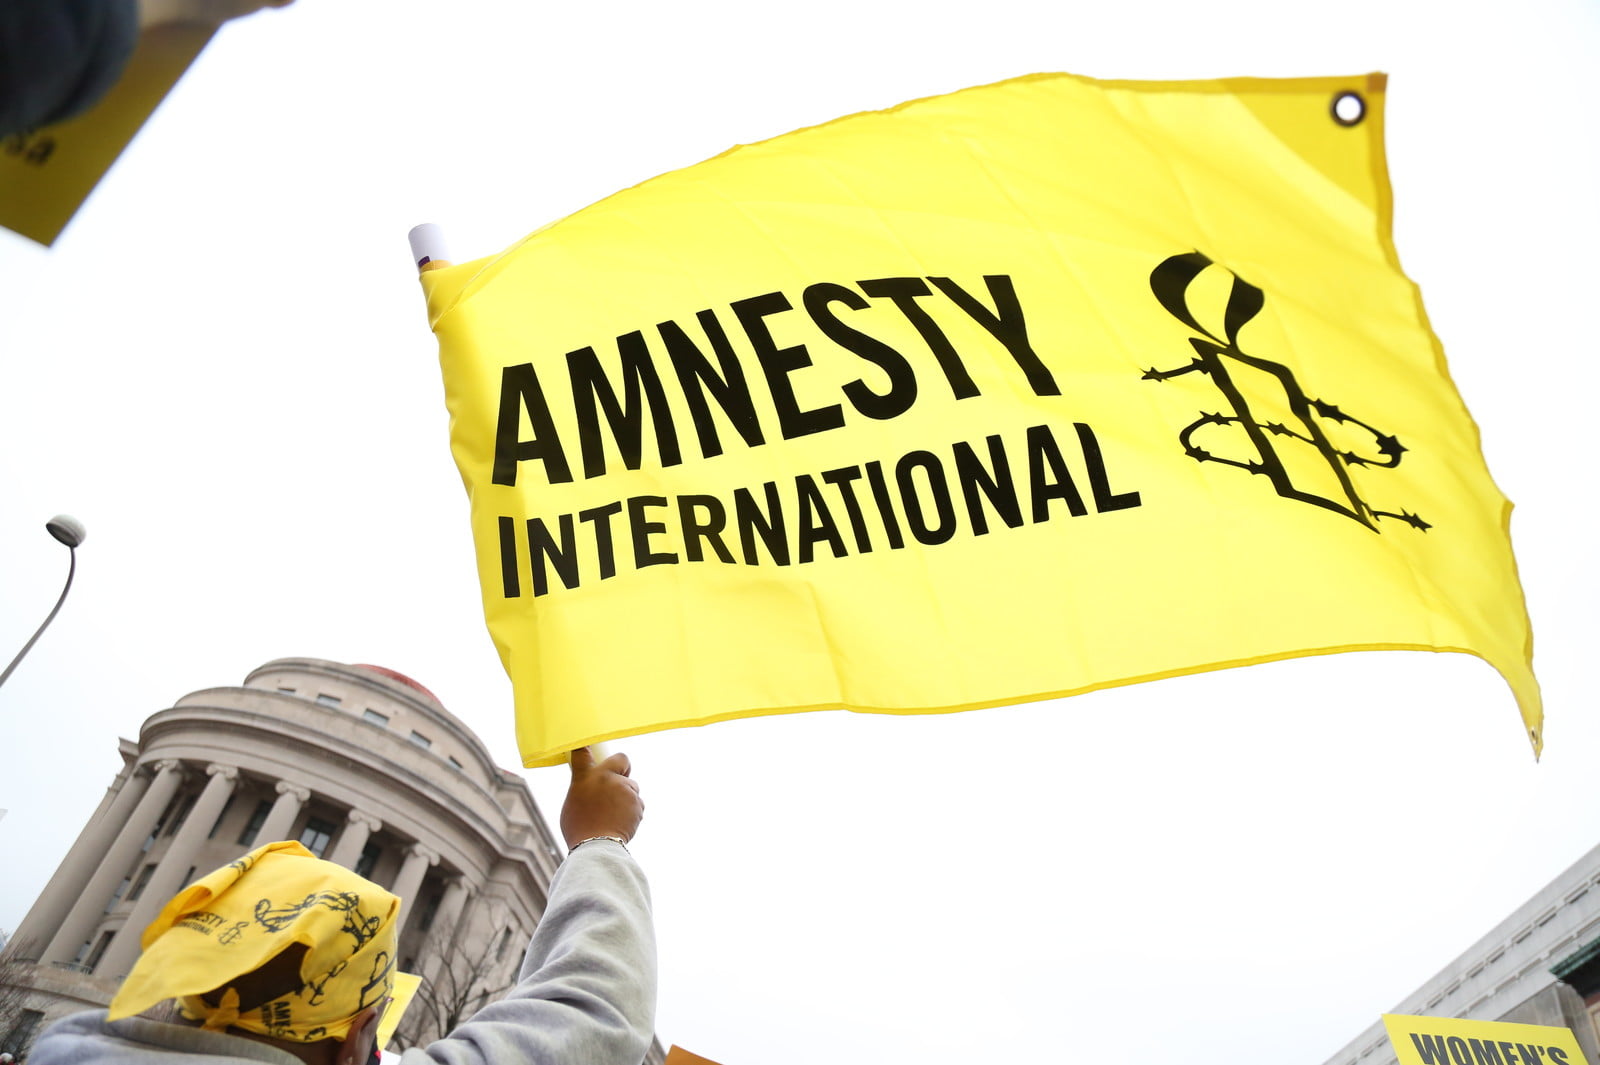 Խոսքի ազատությունը շարունակվեց անհիմն կերպով սահմանափակվել Հայաստանում. Amnesty International